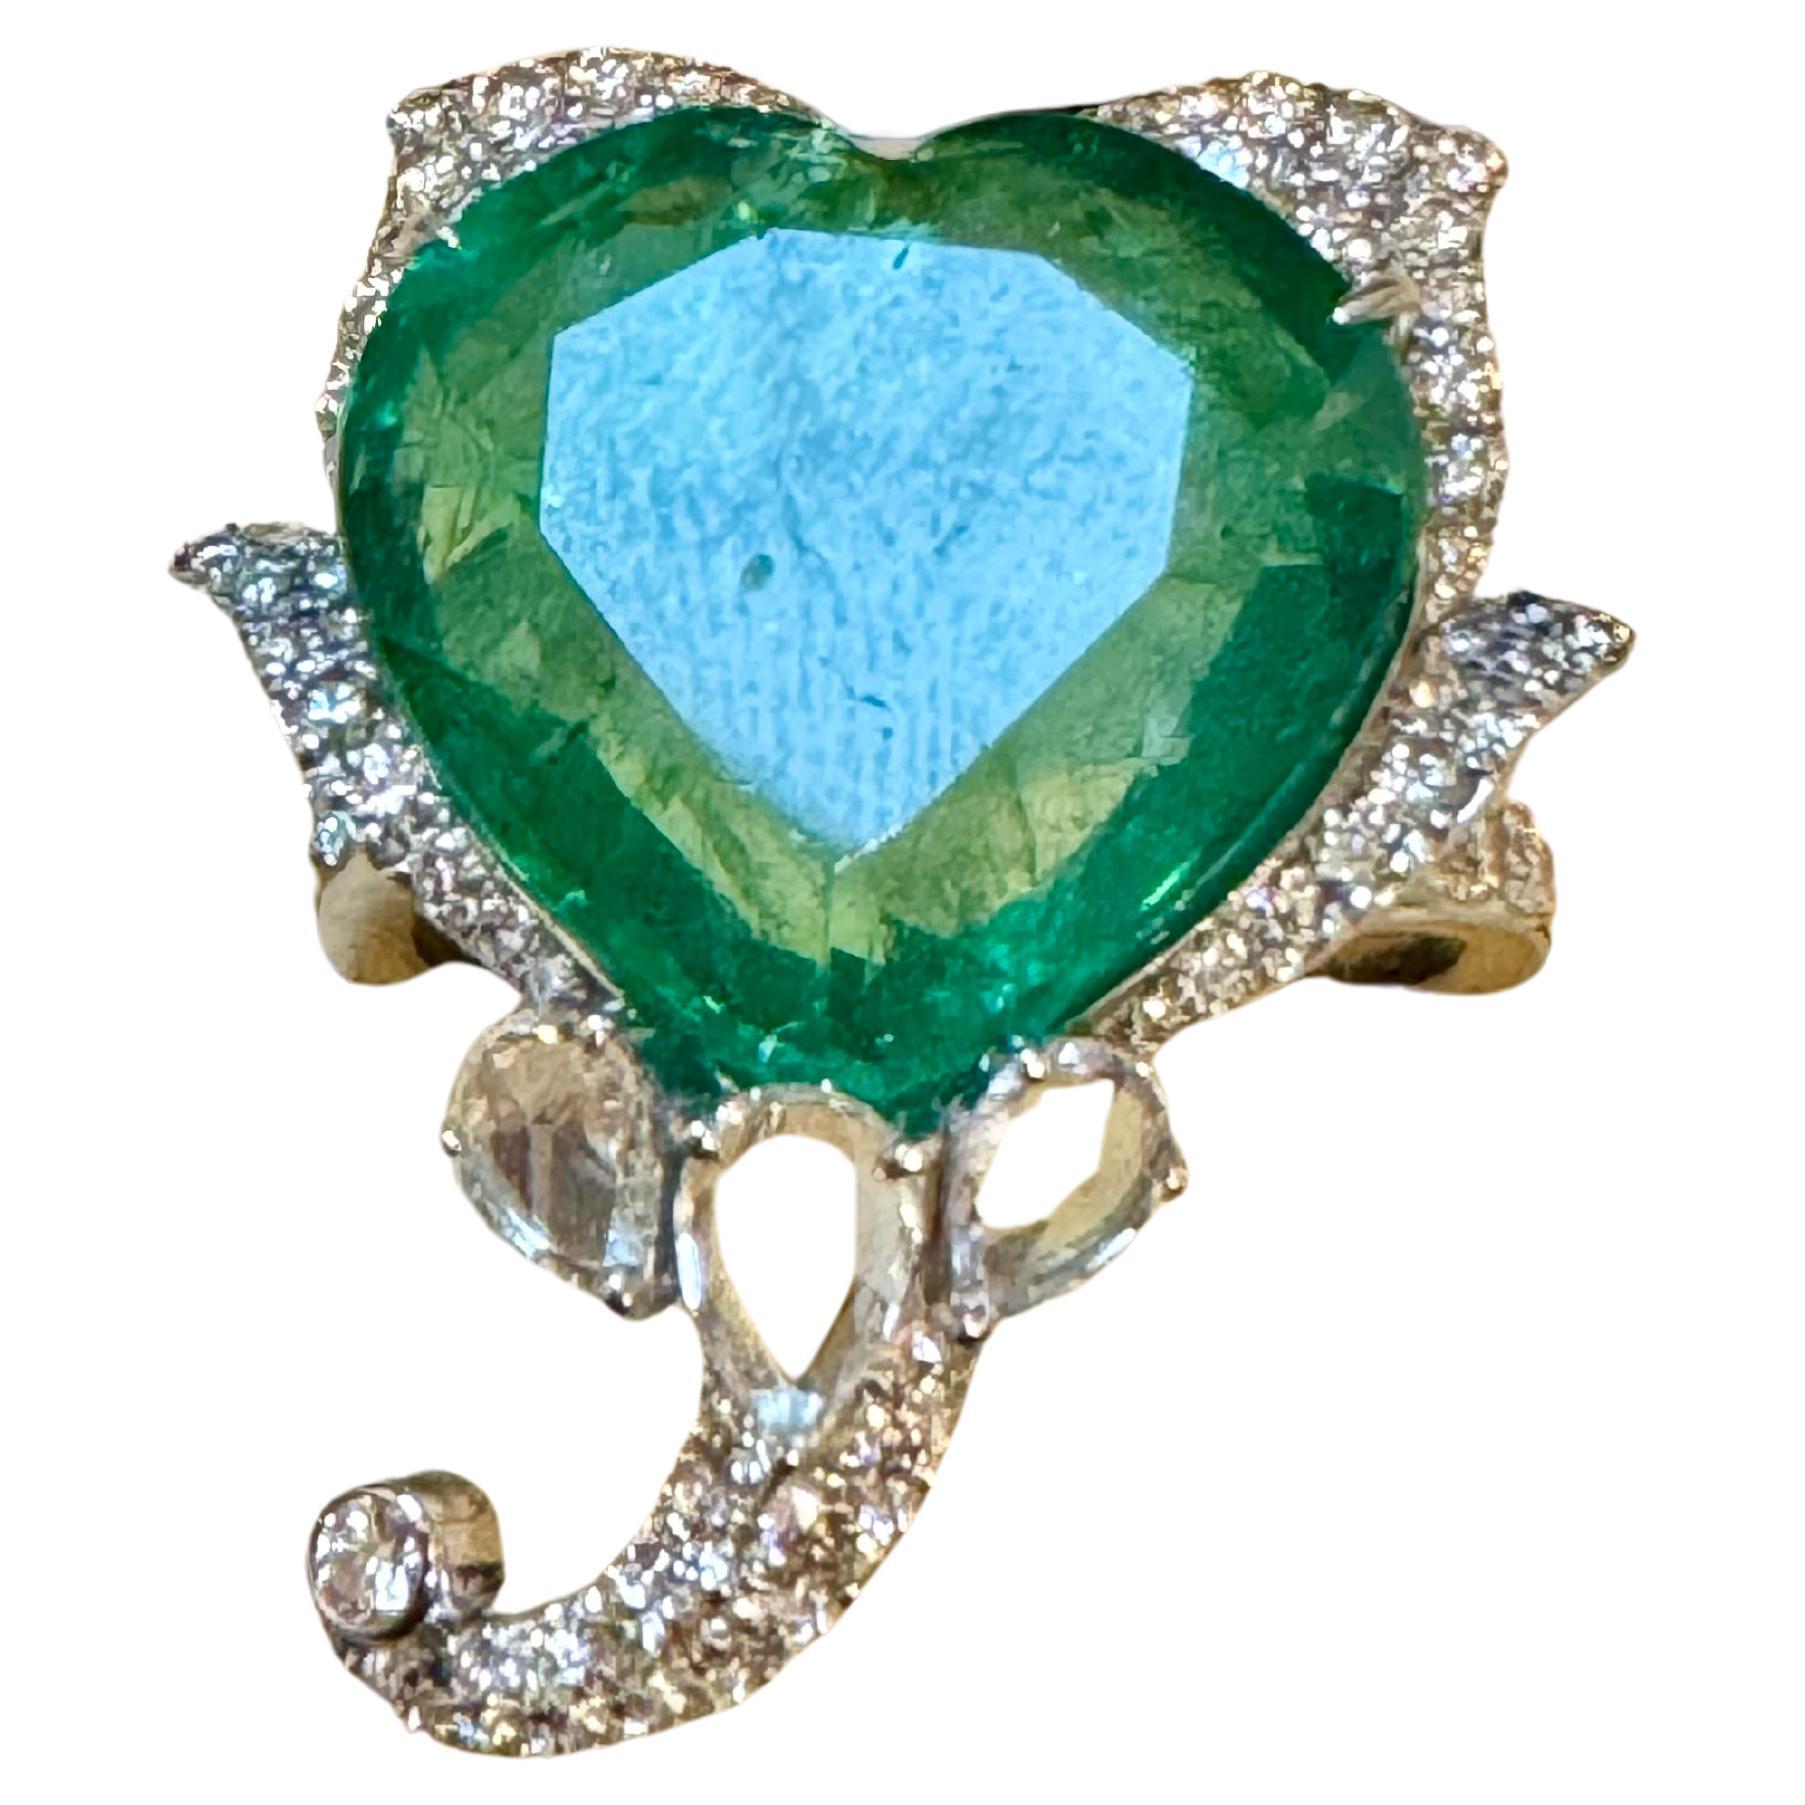 13 Ct  Zambian Heart Cut Emerald & 1.5 Ct Diamond Ring, 18 Kt Gold Size 8.5 